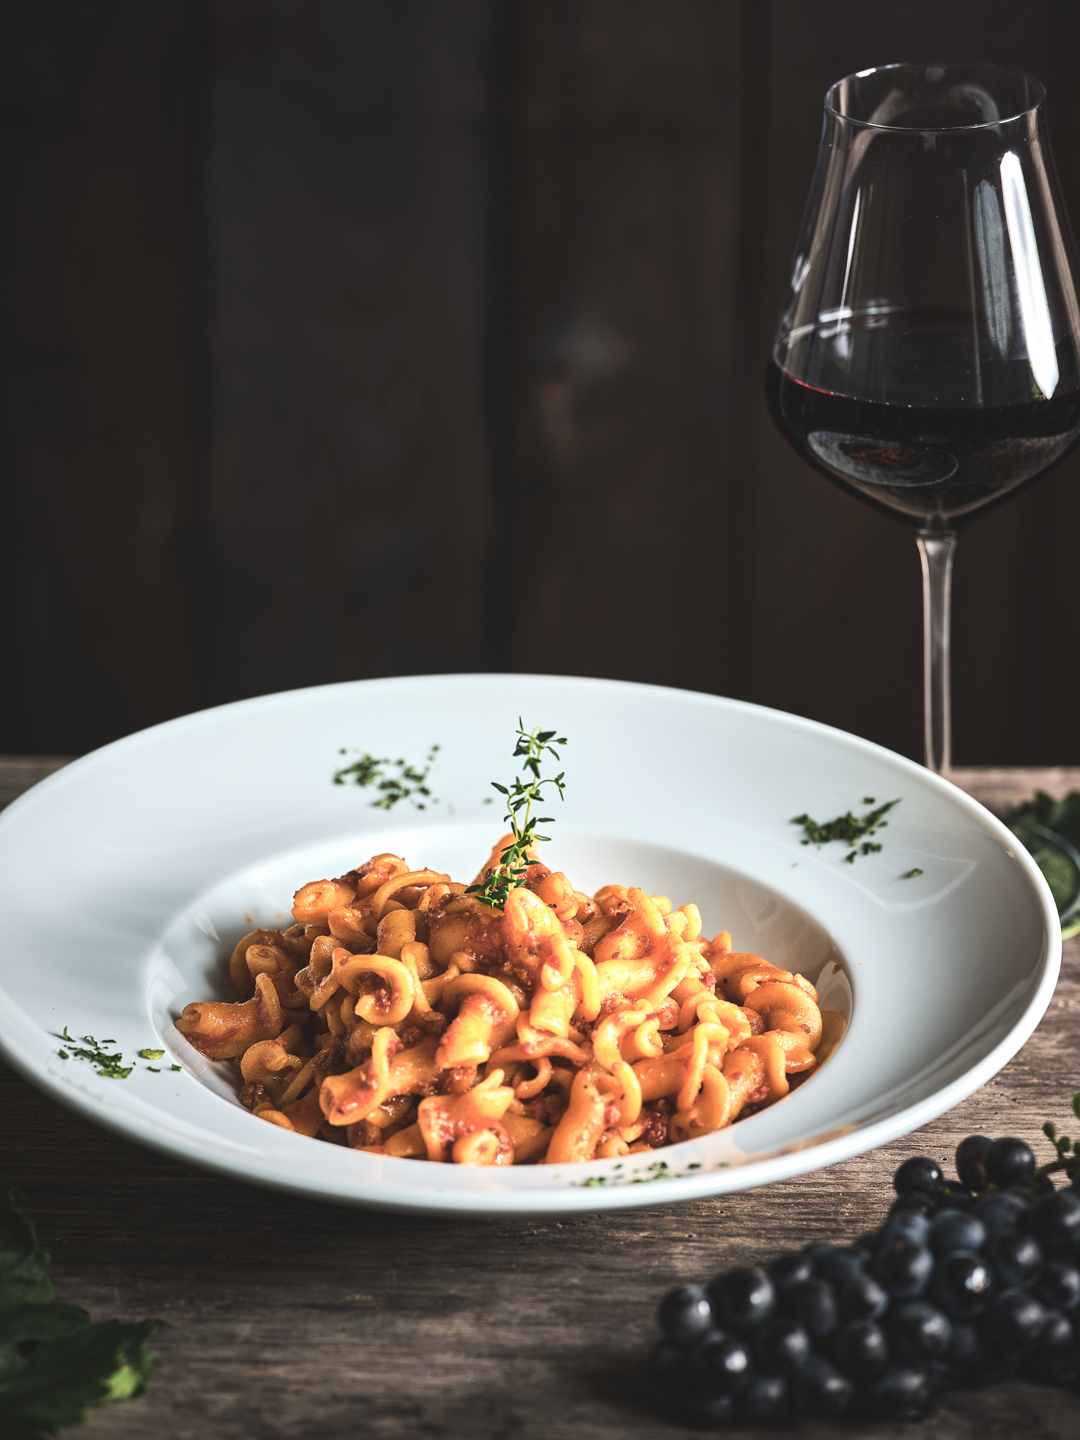 il companatico food photography Visit Rovereto Vallagarina piatti tipici locanda le Tre chiavi abbinamento vino primi trentini